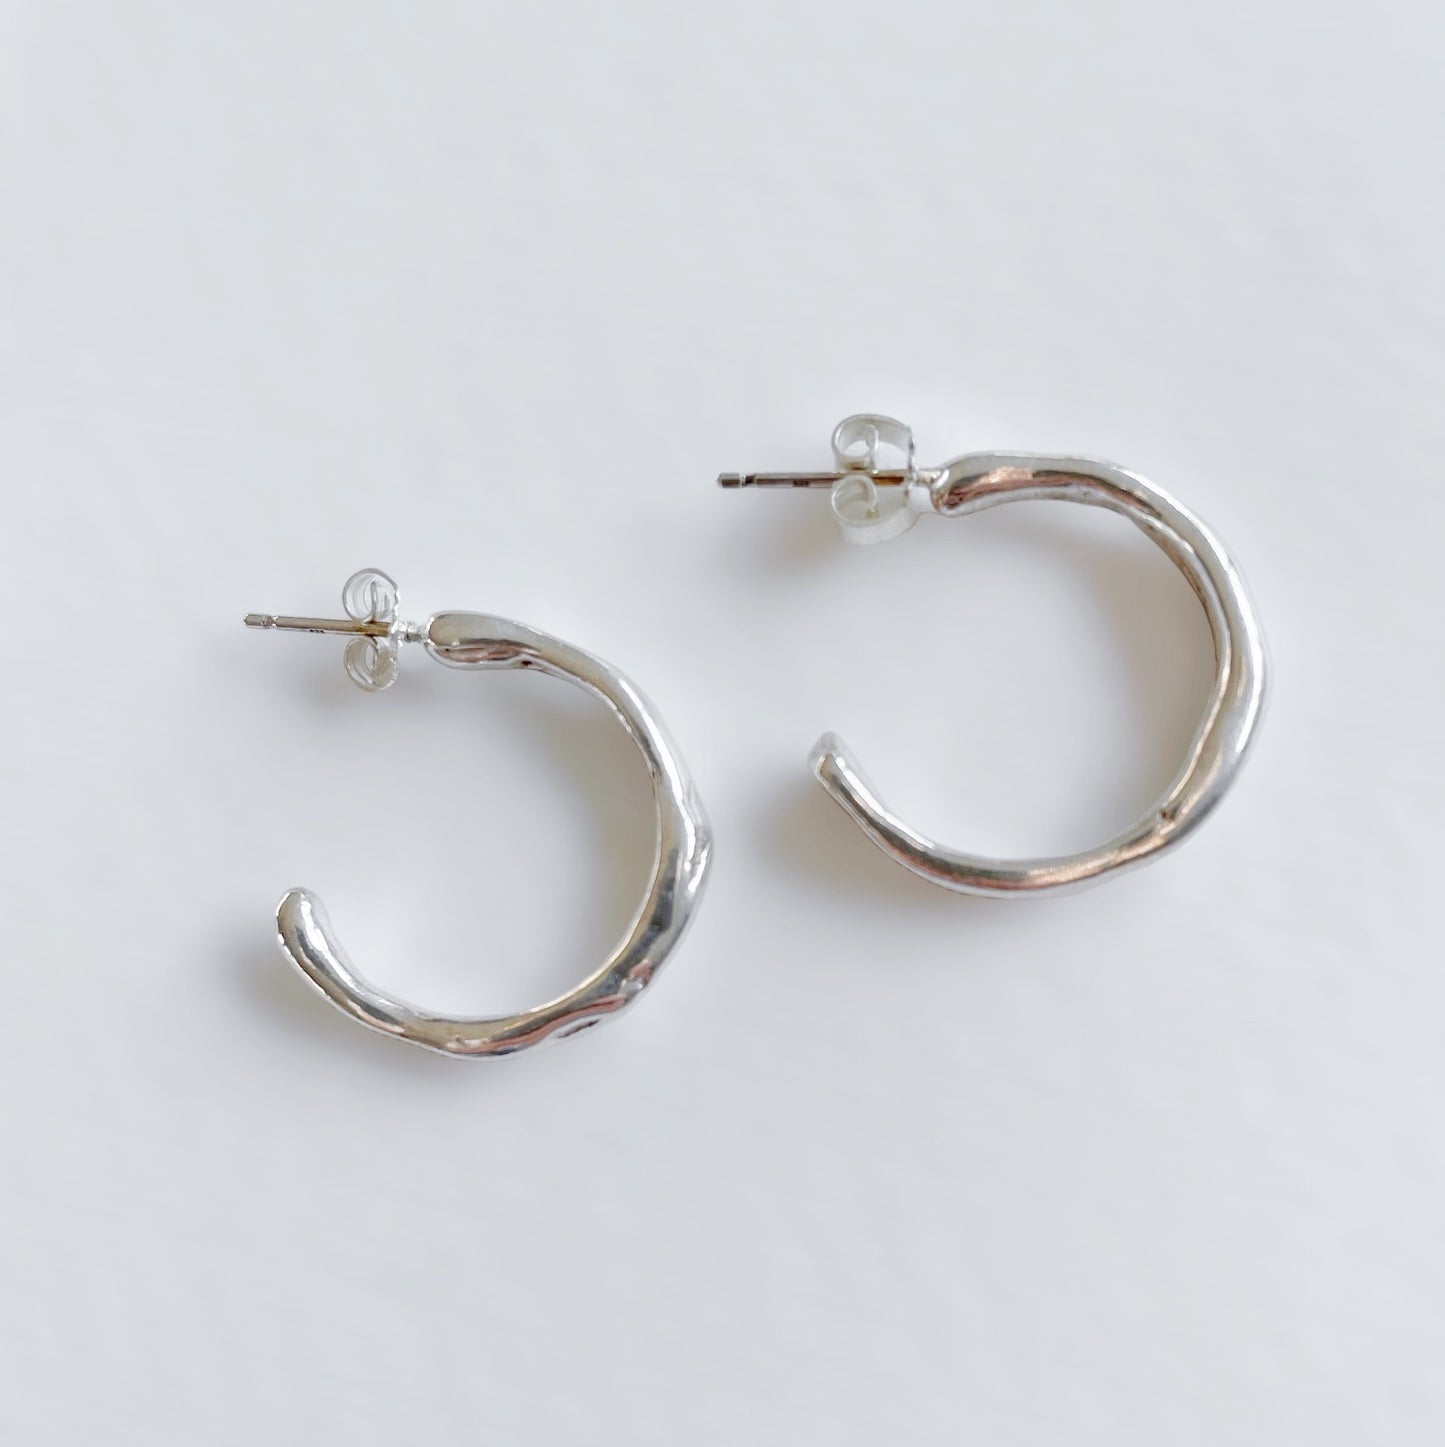 Curvy earrings